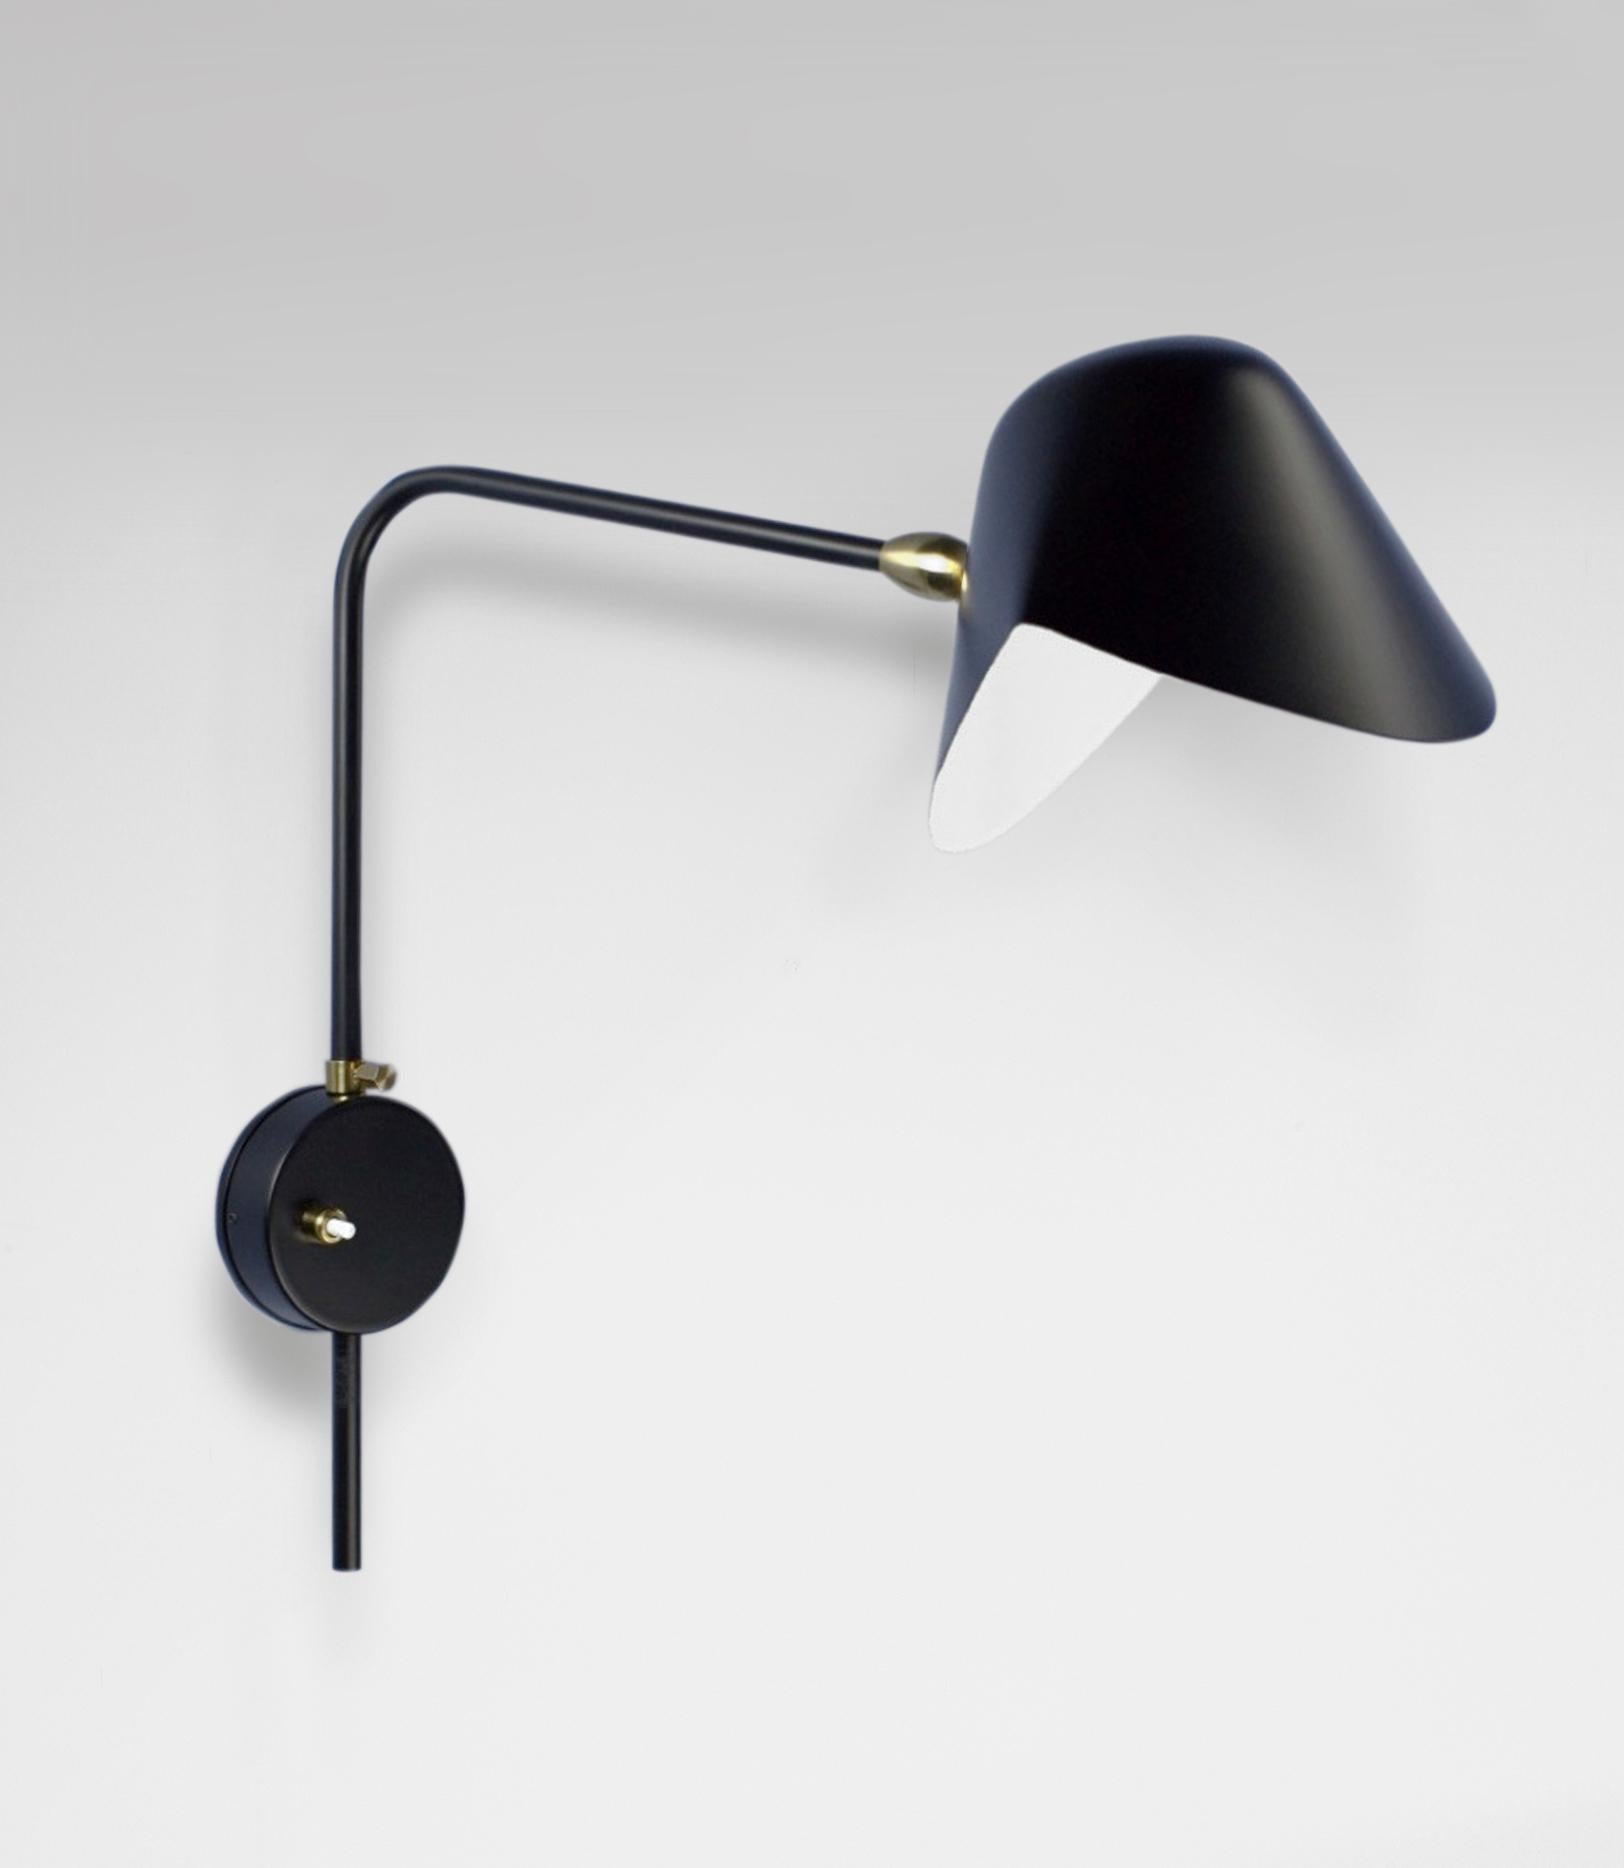 Wandleuchte Modell 'Anthony Wall Lamp Whit Round Fixation Box', entworfen von Serge Mouille im Jahr 1953.

Hergestellt von Editions Serge Mouille in Frankreich. Die Herstellung der Lampen, Wandleuchten und Stehlampen erfolgt in handwerklicher Weise